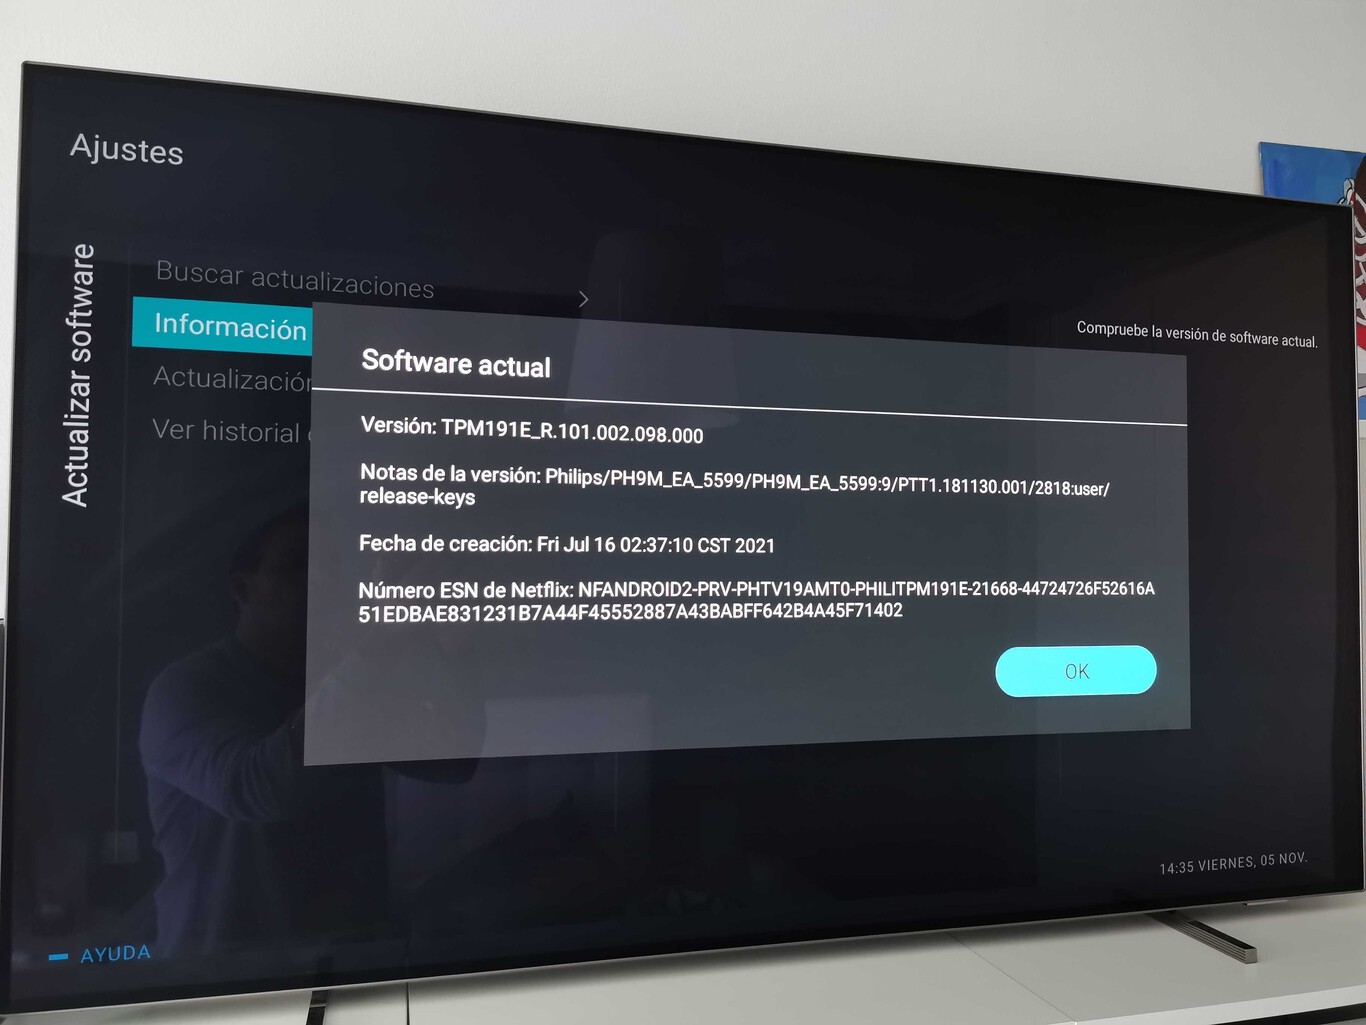 Televisor Philips con Android Tv actualizando el software. (foto: AppsProBox)